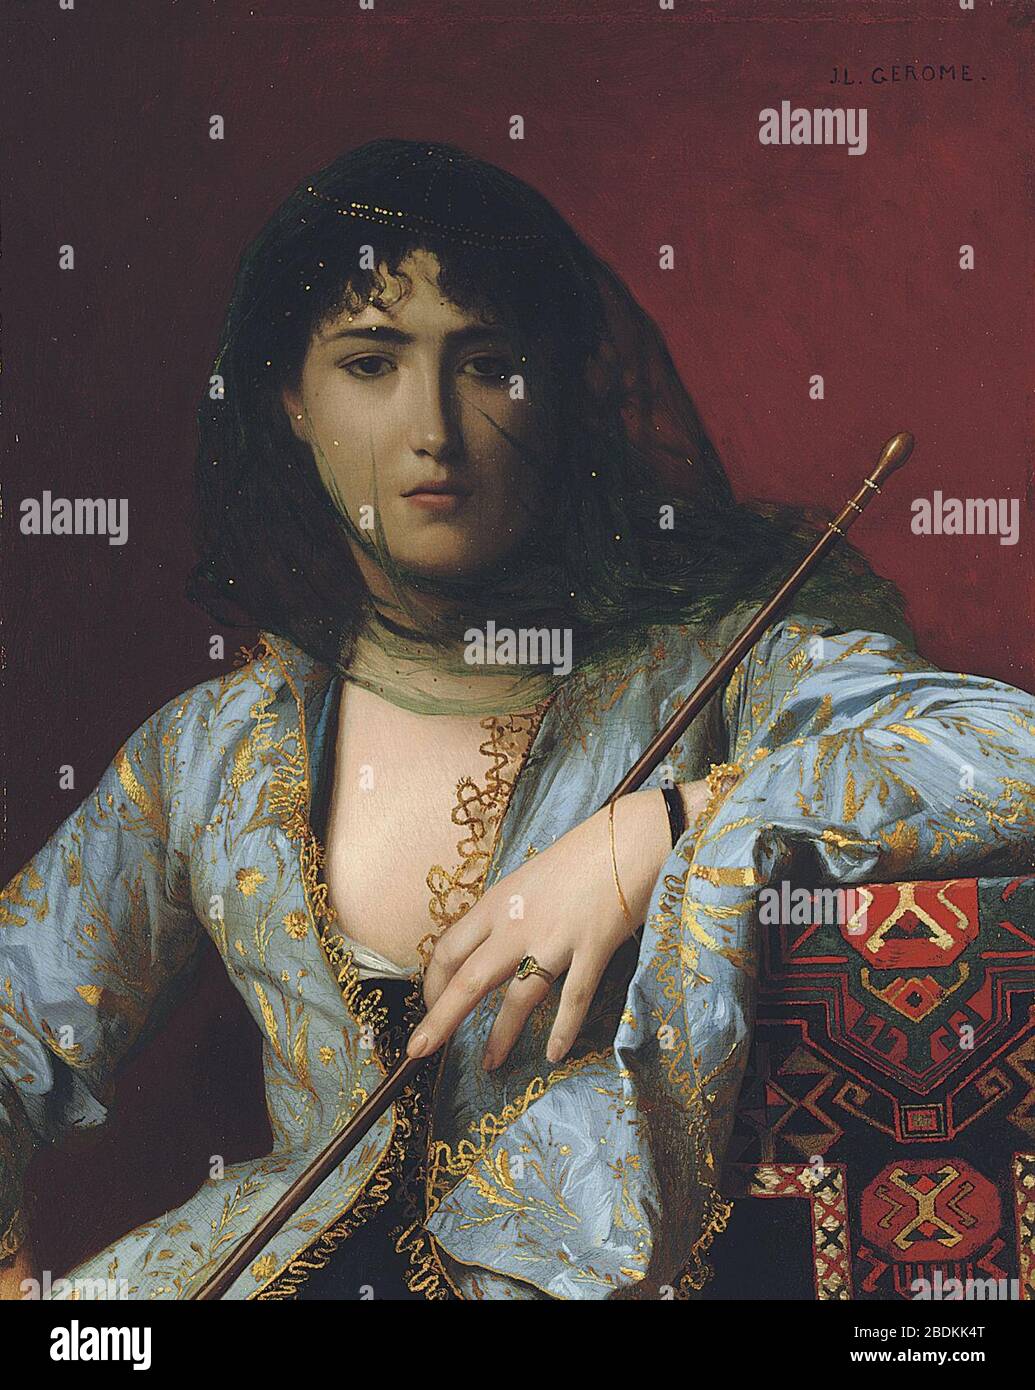 Gérôme--Femme circassienne voilée--Veiled Circassian Beauty--1876. Stock Photo